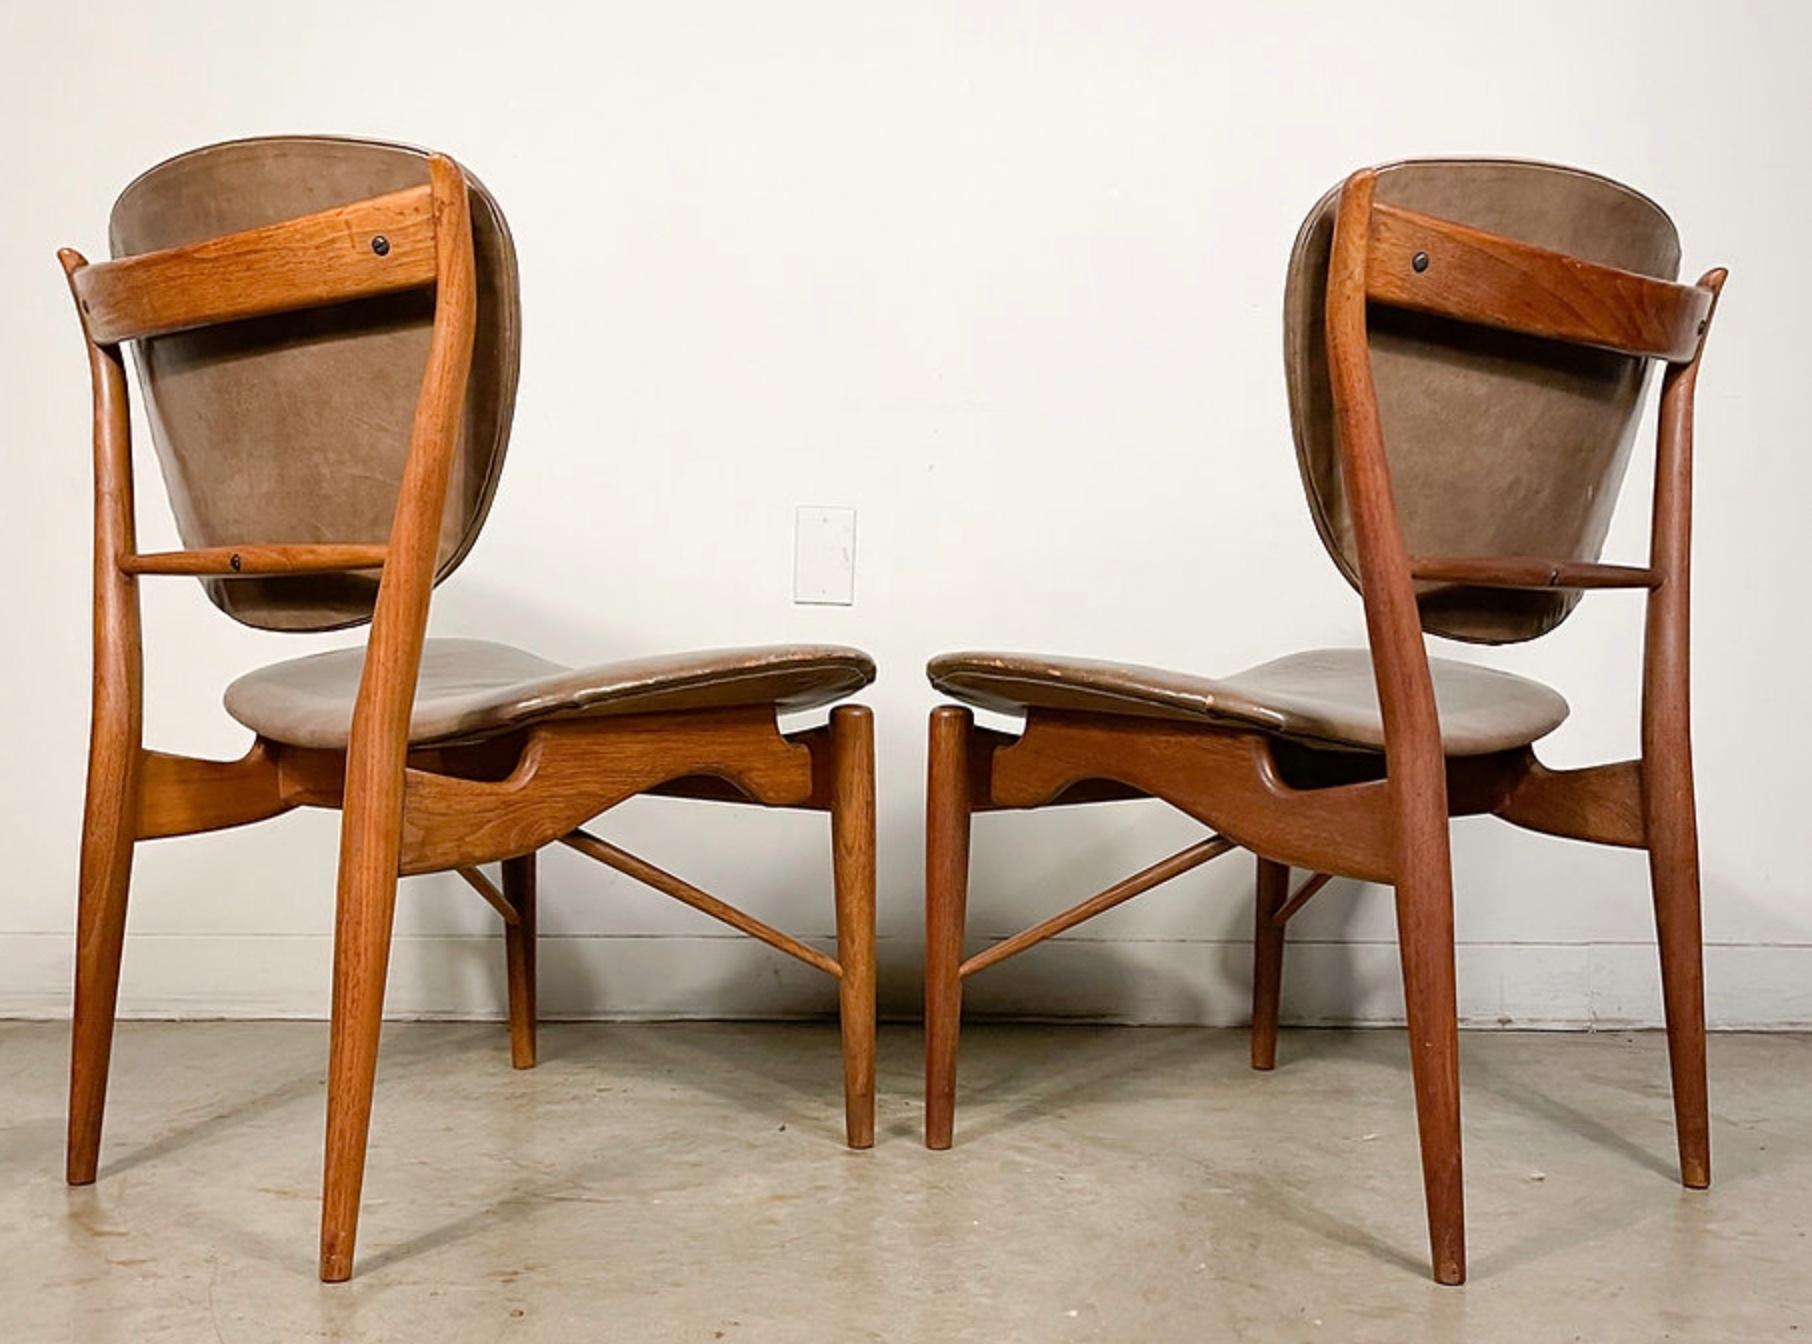 Leather Finn Juhl 51 Chairs by Baker in Walnut